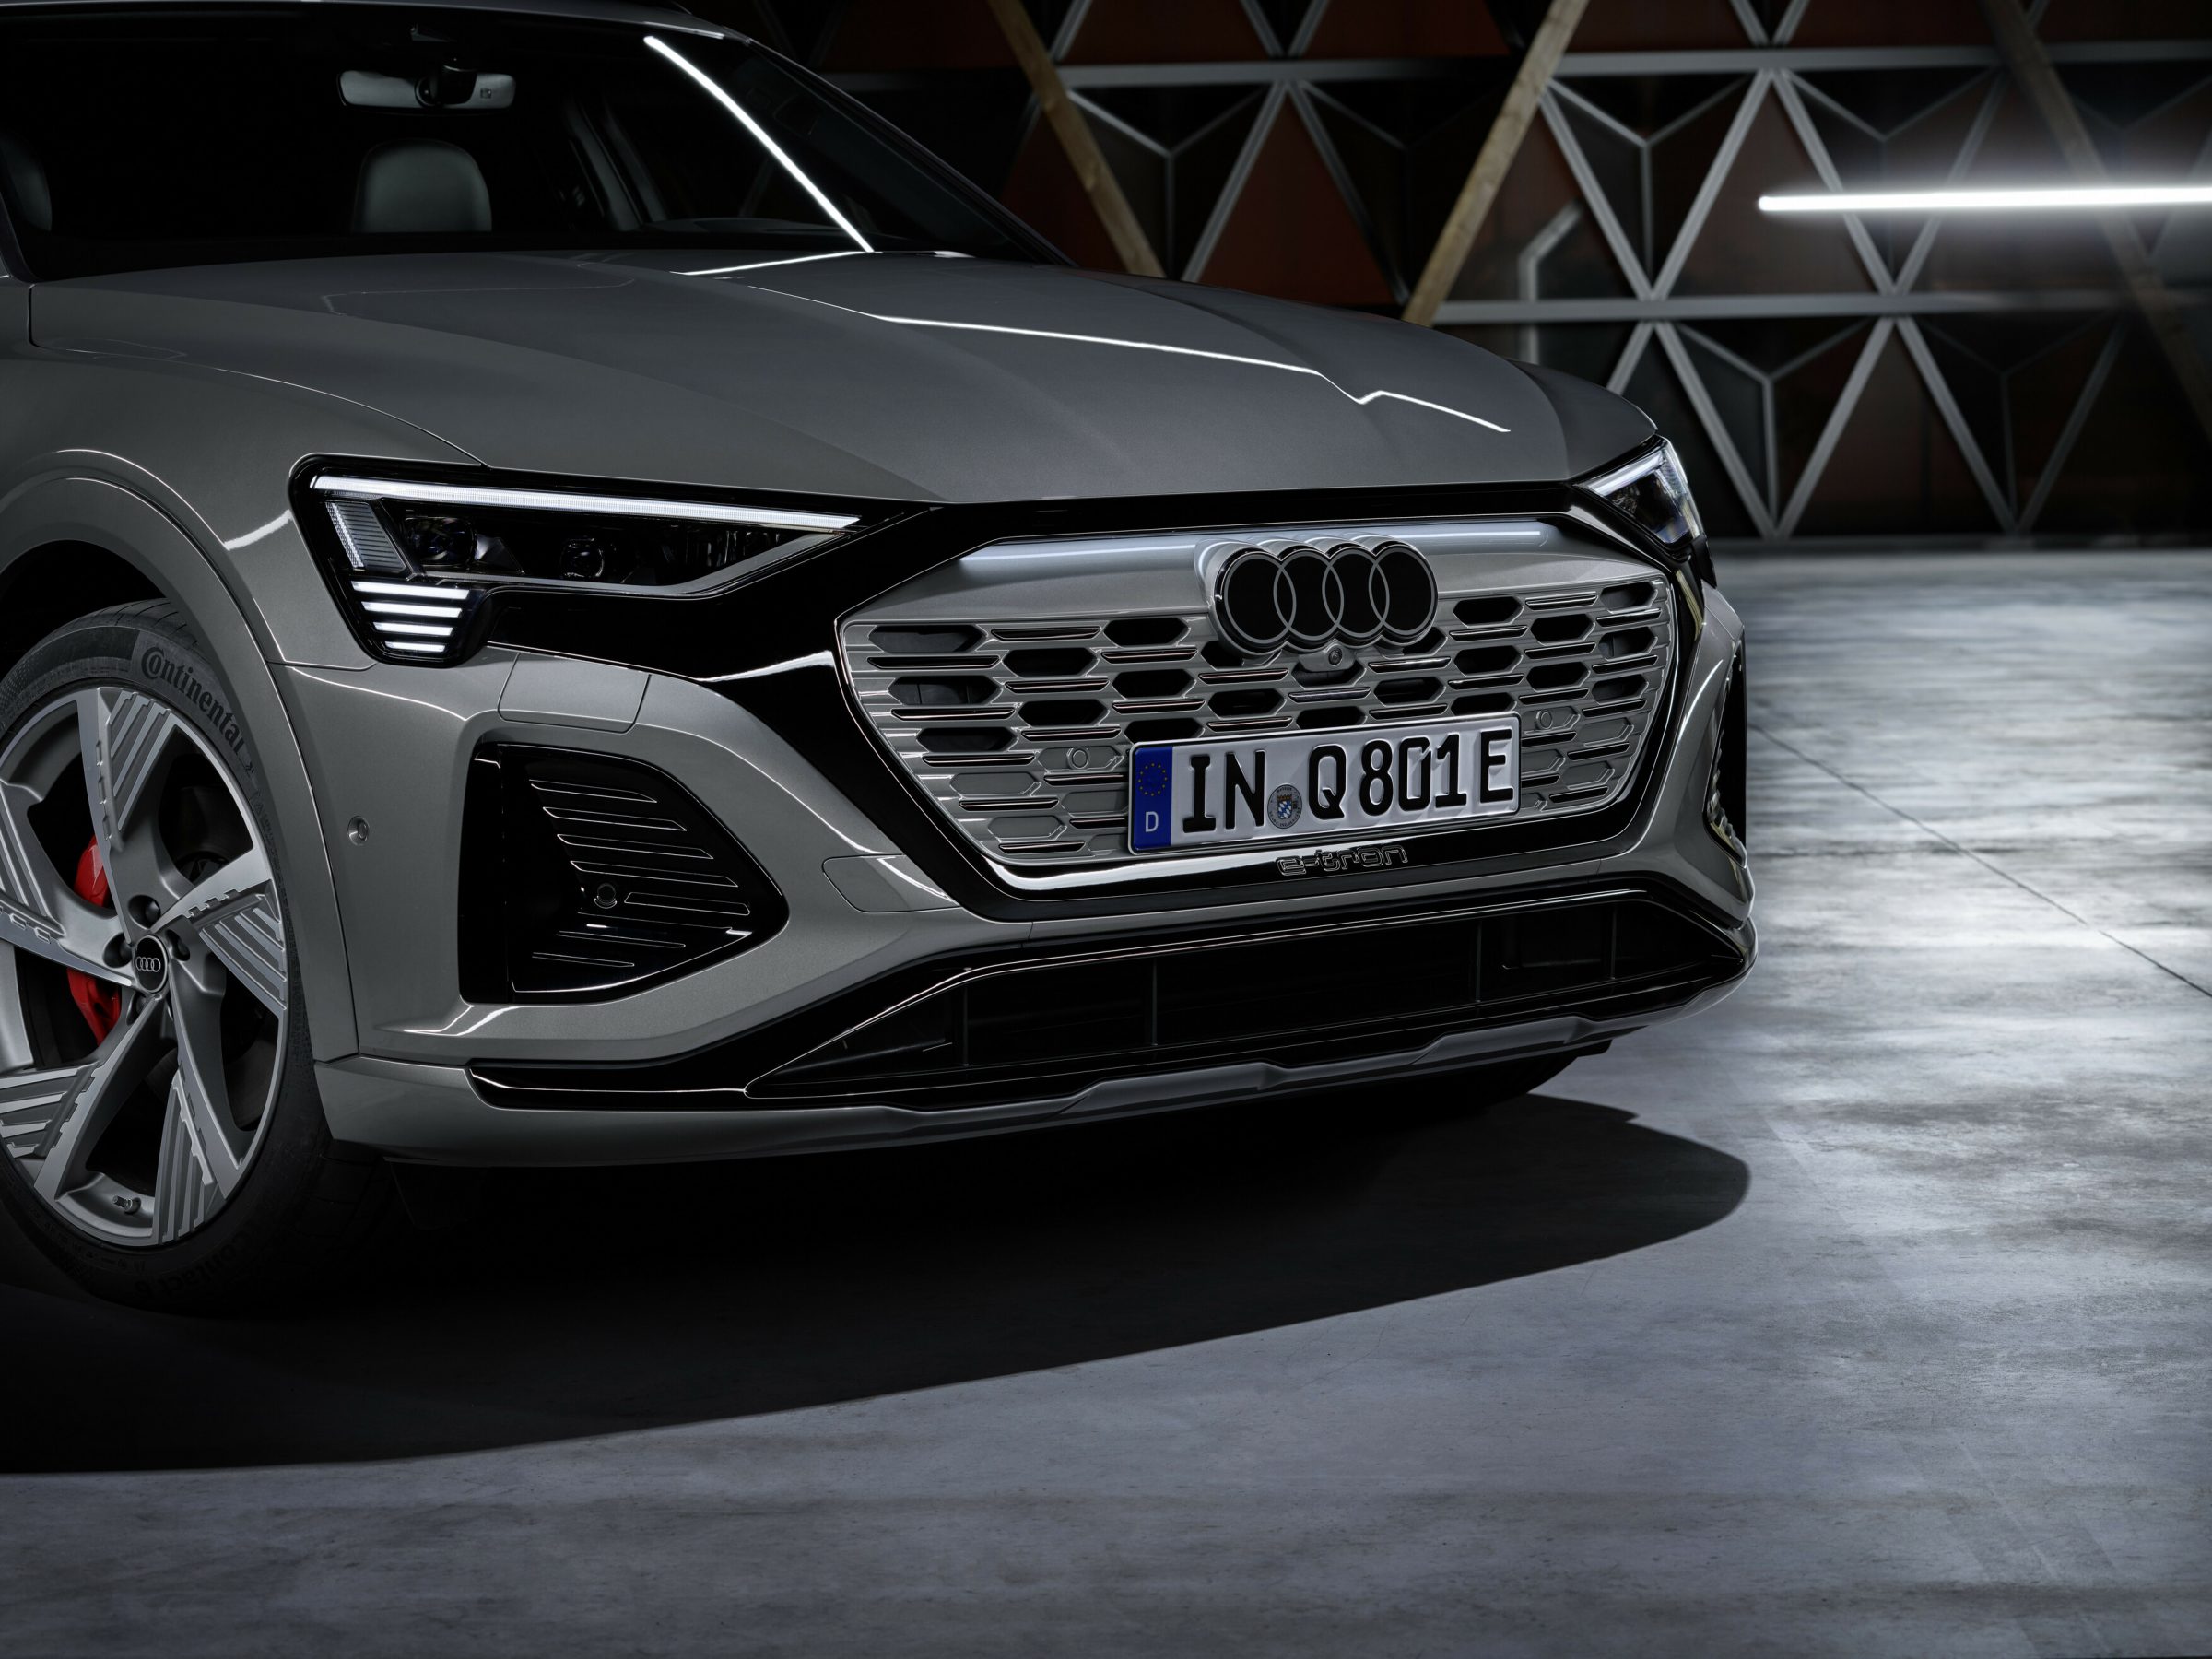 Descubra por que a Audi reformulou o logotipo das quatro argolas